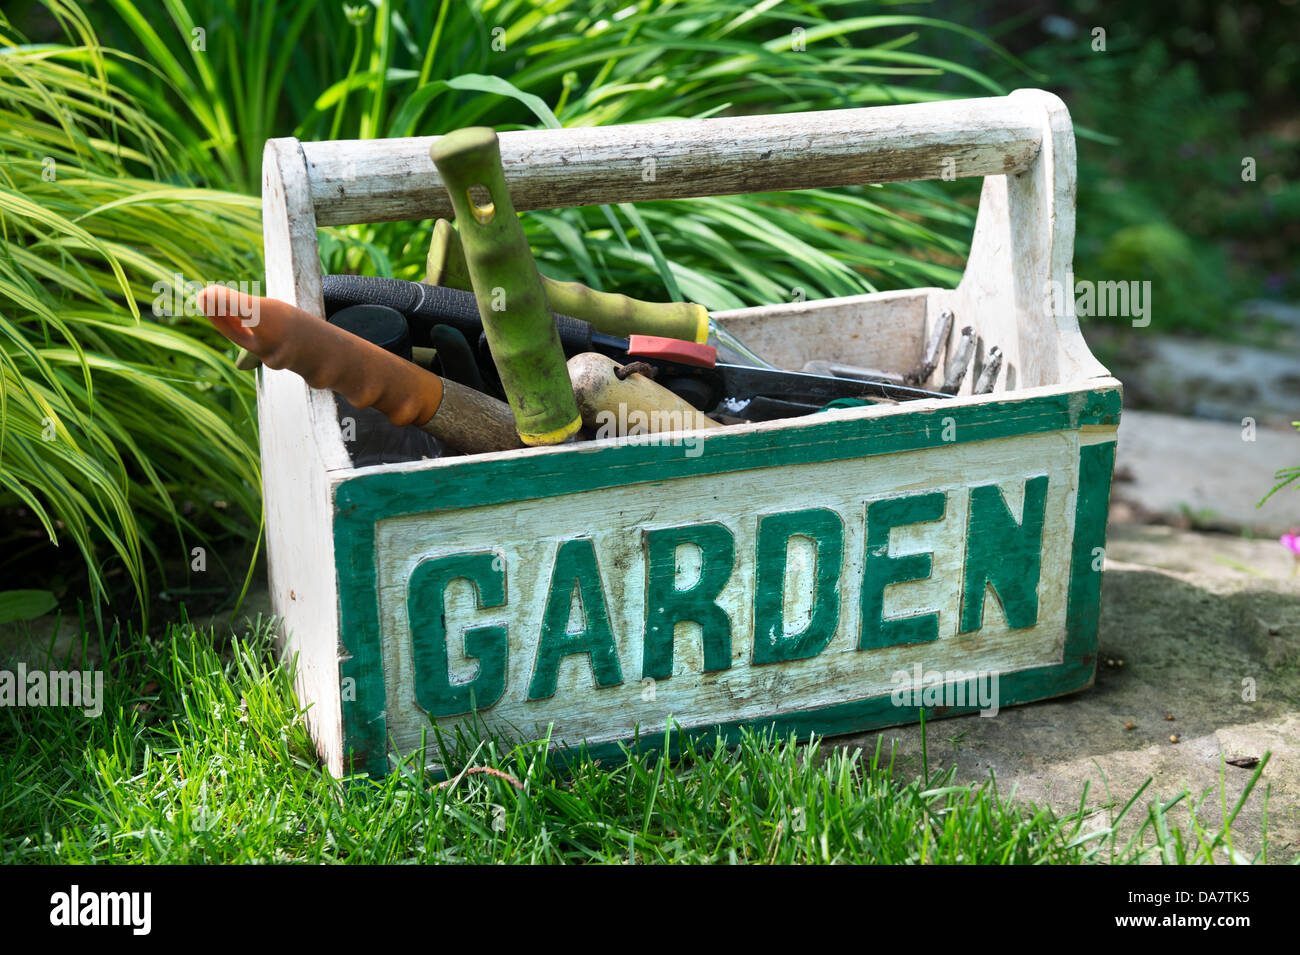 Una scatola con la parola 'Garden' riempito con utensile da giardinaggio seduti in giardino Foto Stock